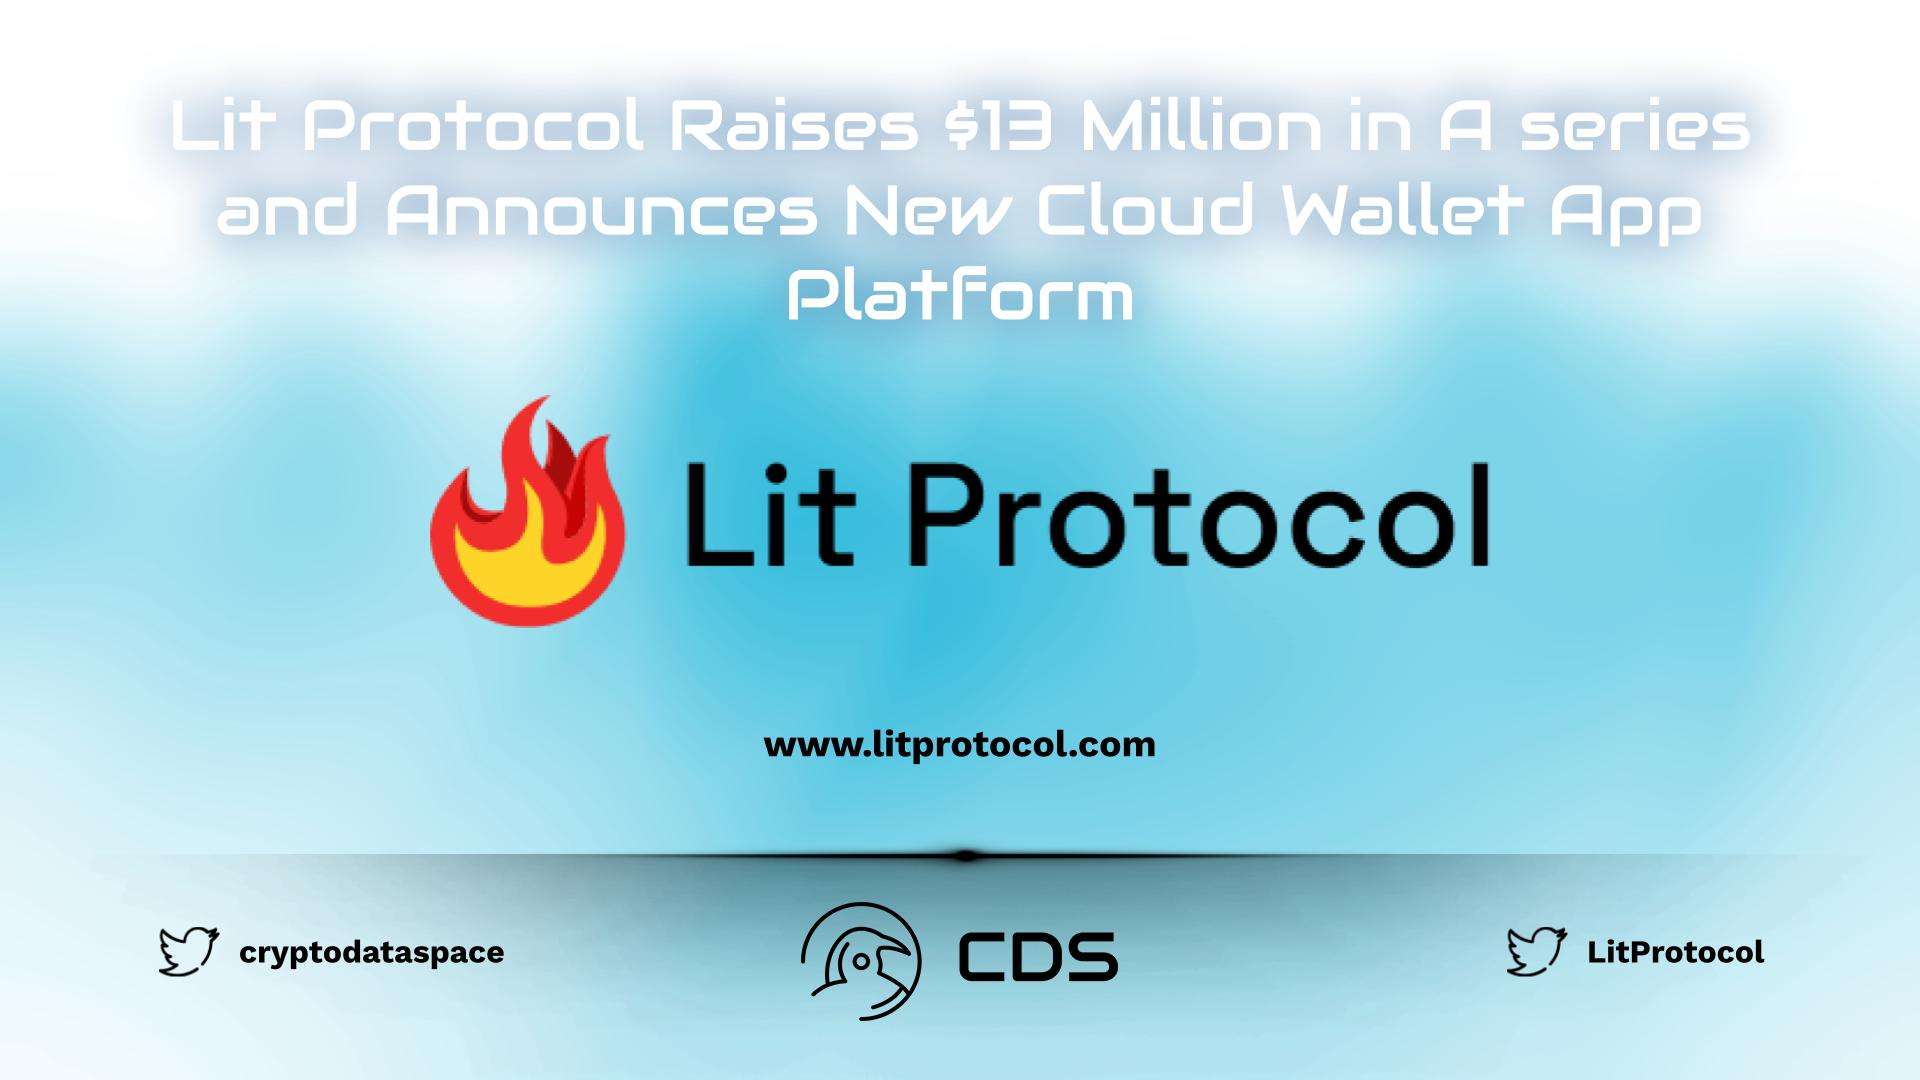 Lit Protocol Raises $13 Million in A series and Announces New Cloud Wallet App Platform